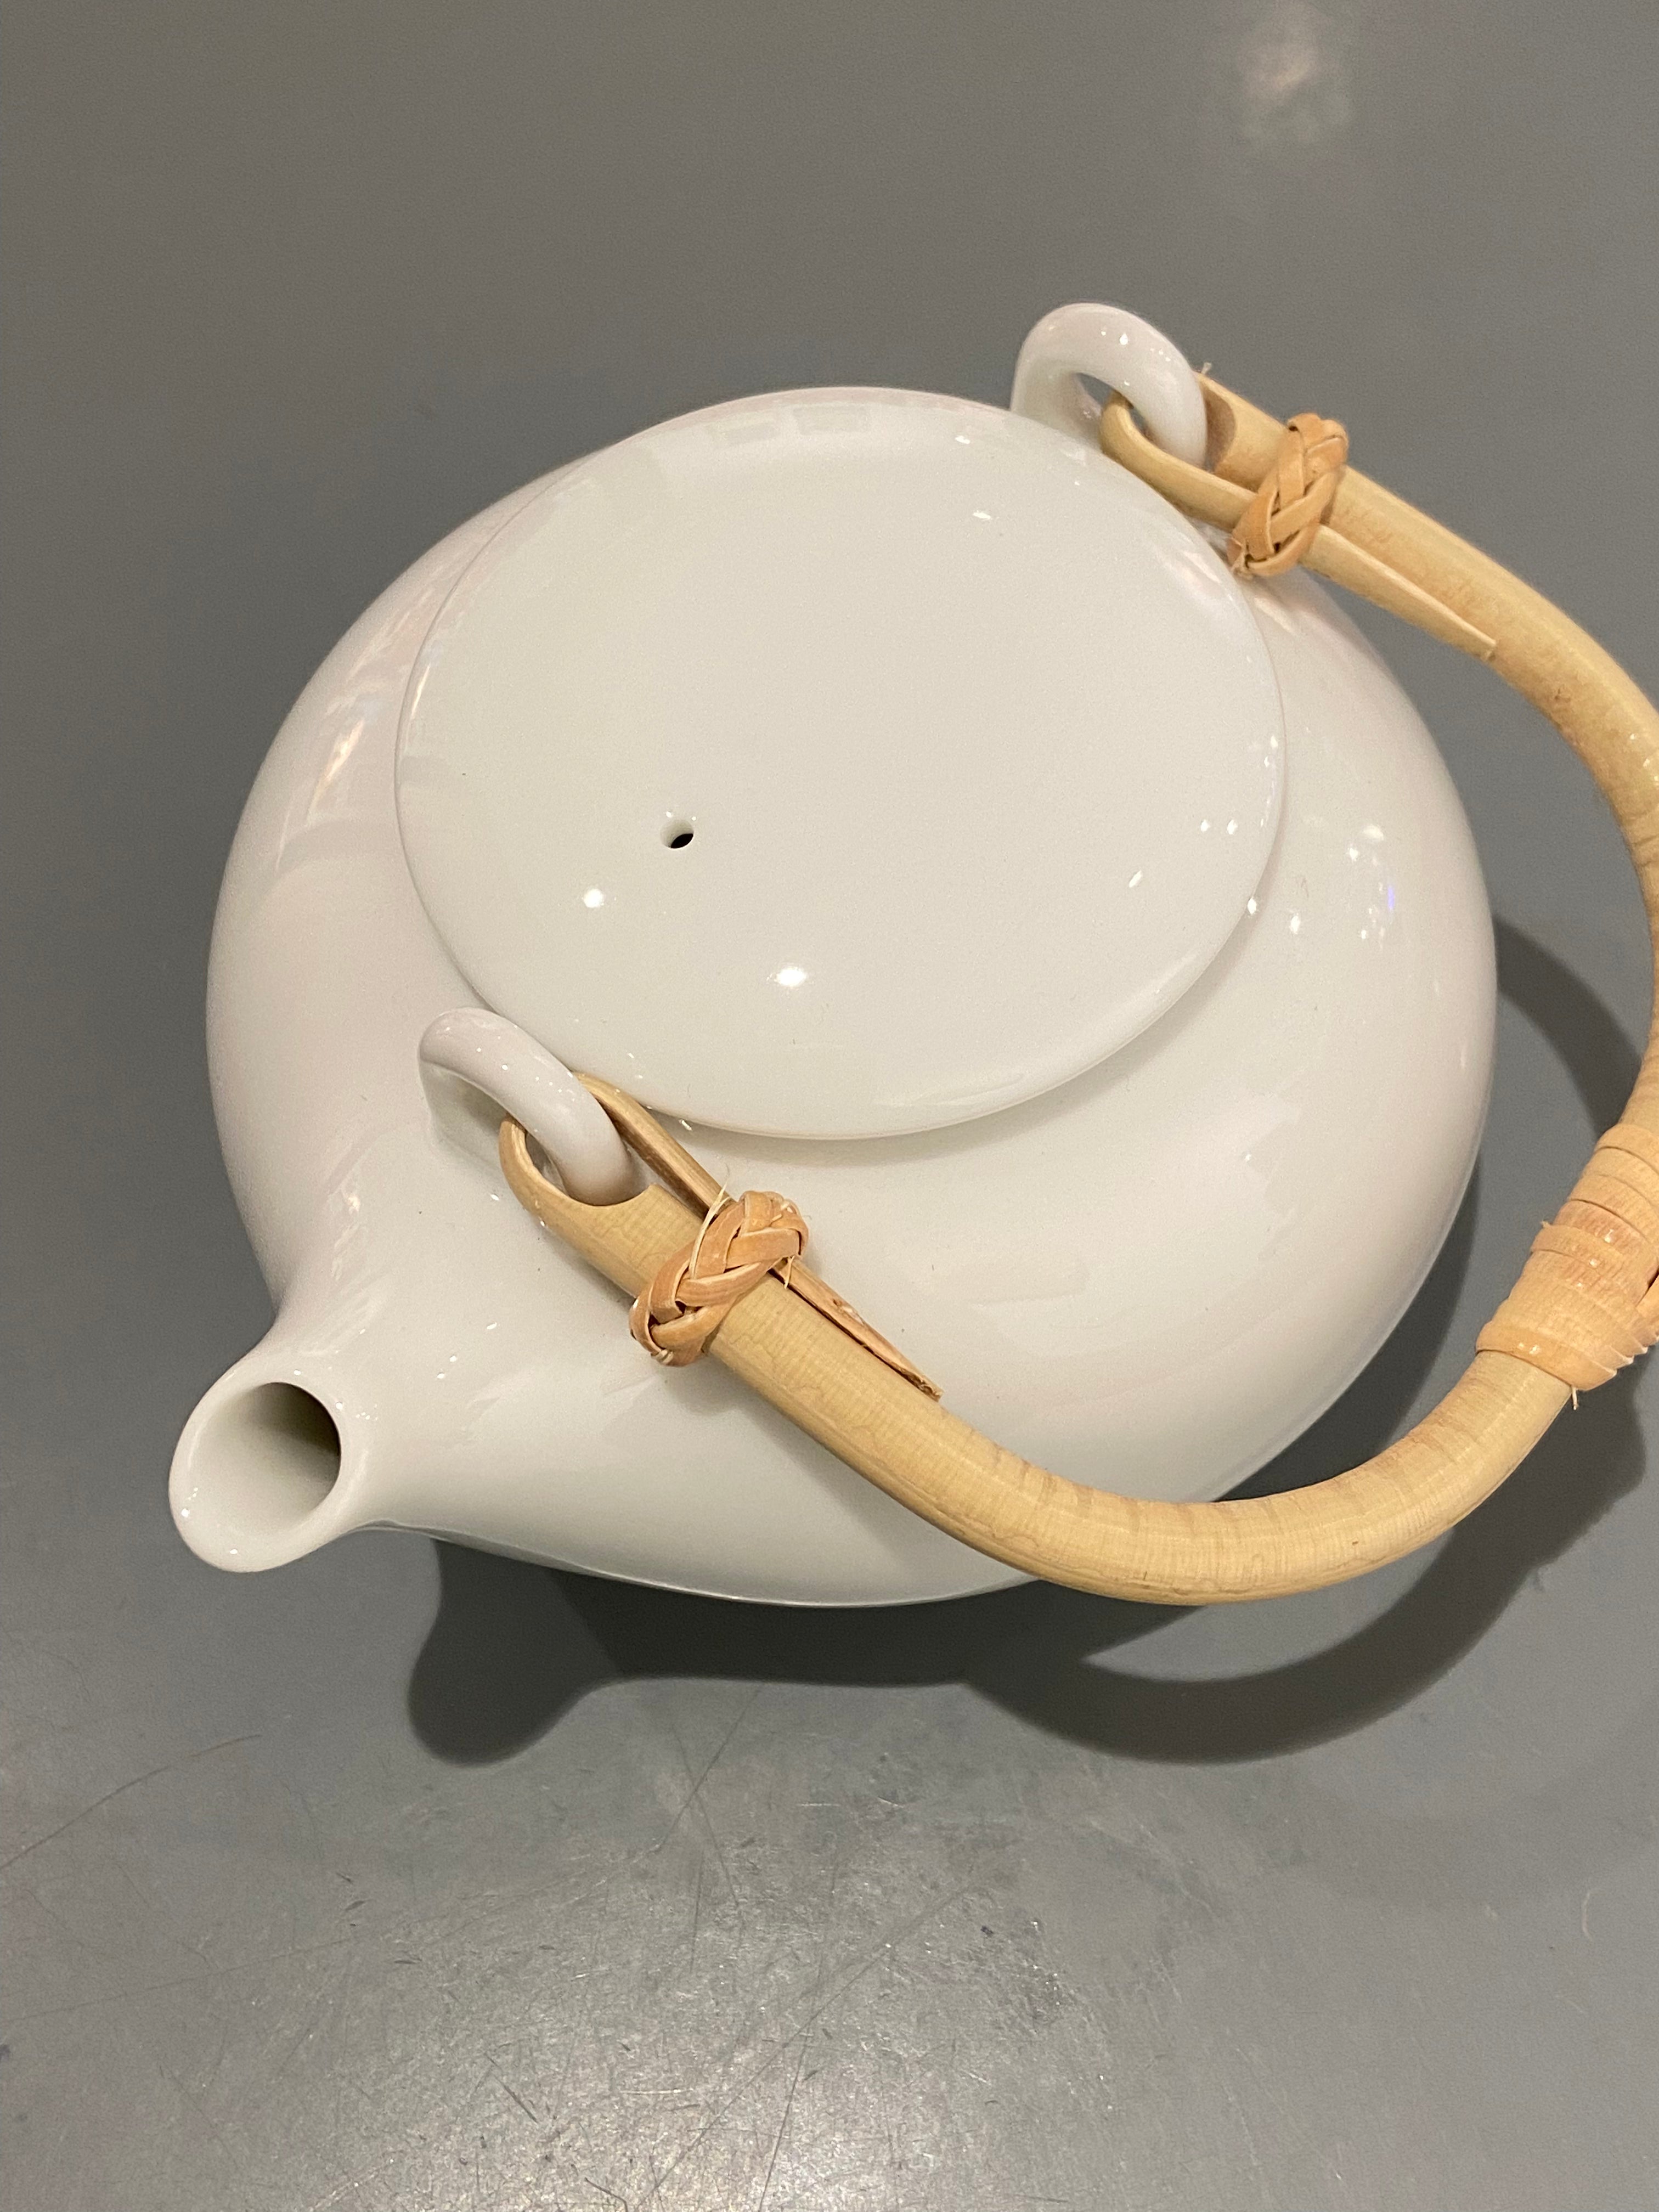 Small white teapot